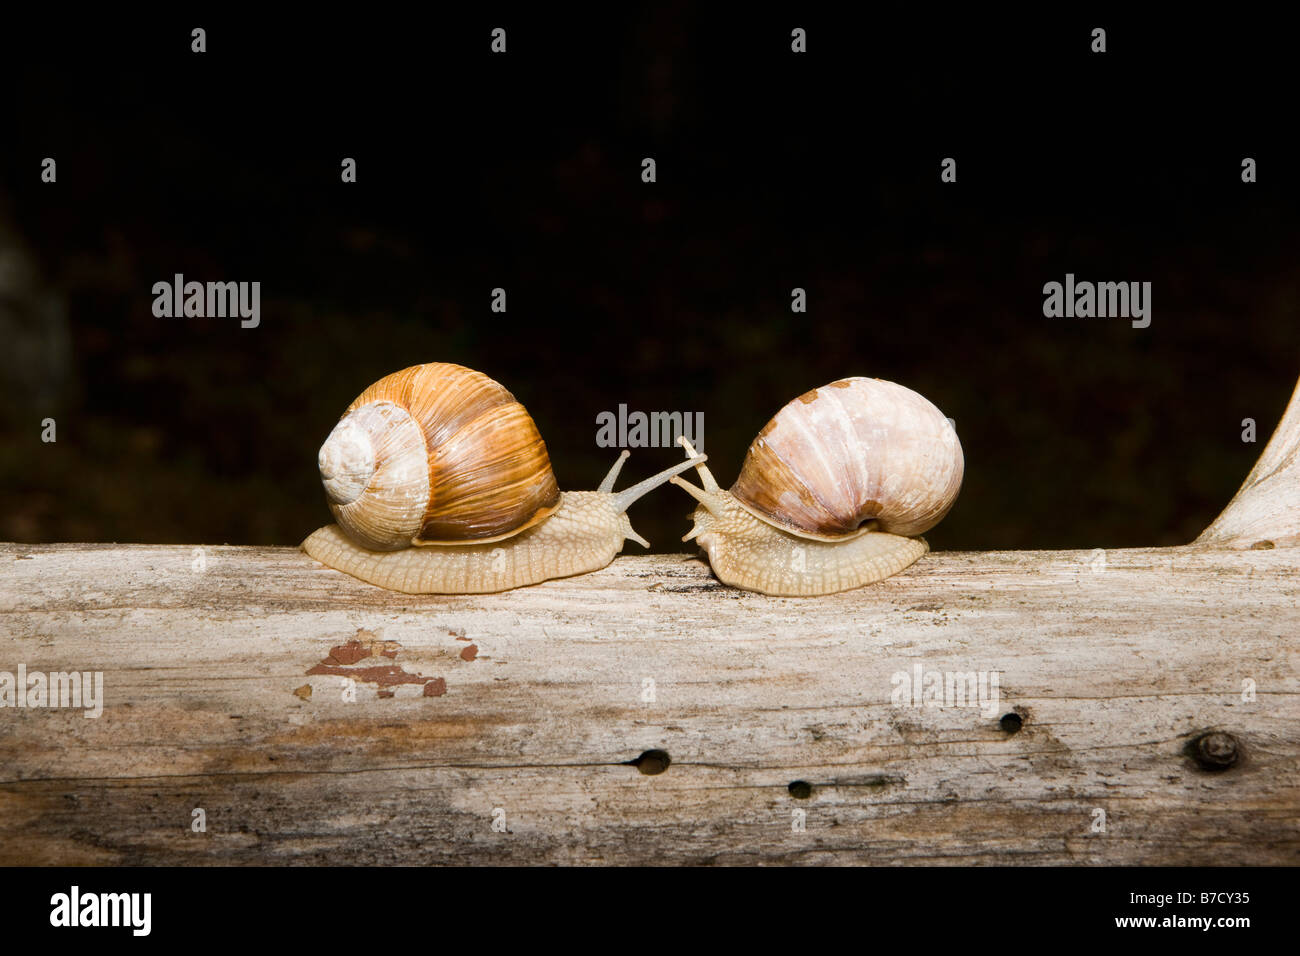 Deux escargots terrestres (Gastropoda) face à face sur un journal Banque D'Images